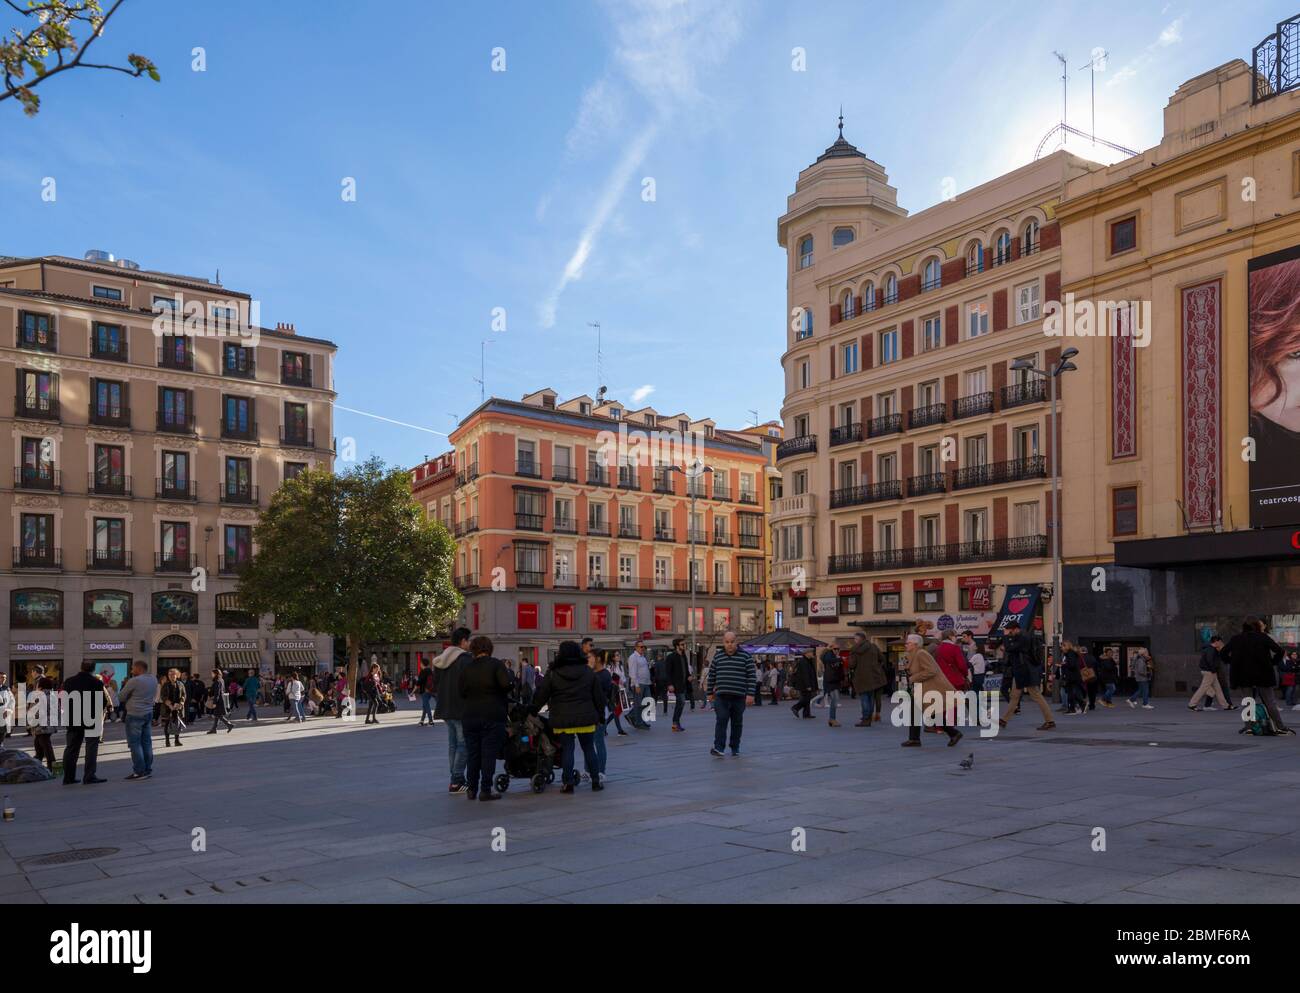 Vue sur l'architecture de la Plaza del Callao, Madrid, Espagne, Europe Banque D'Images